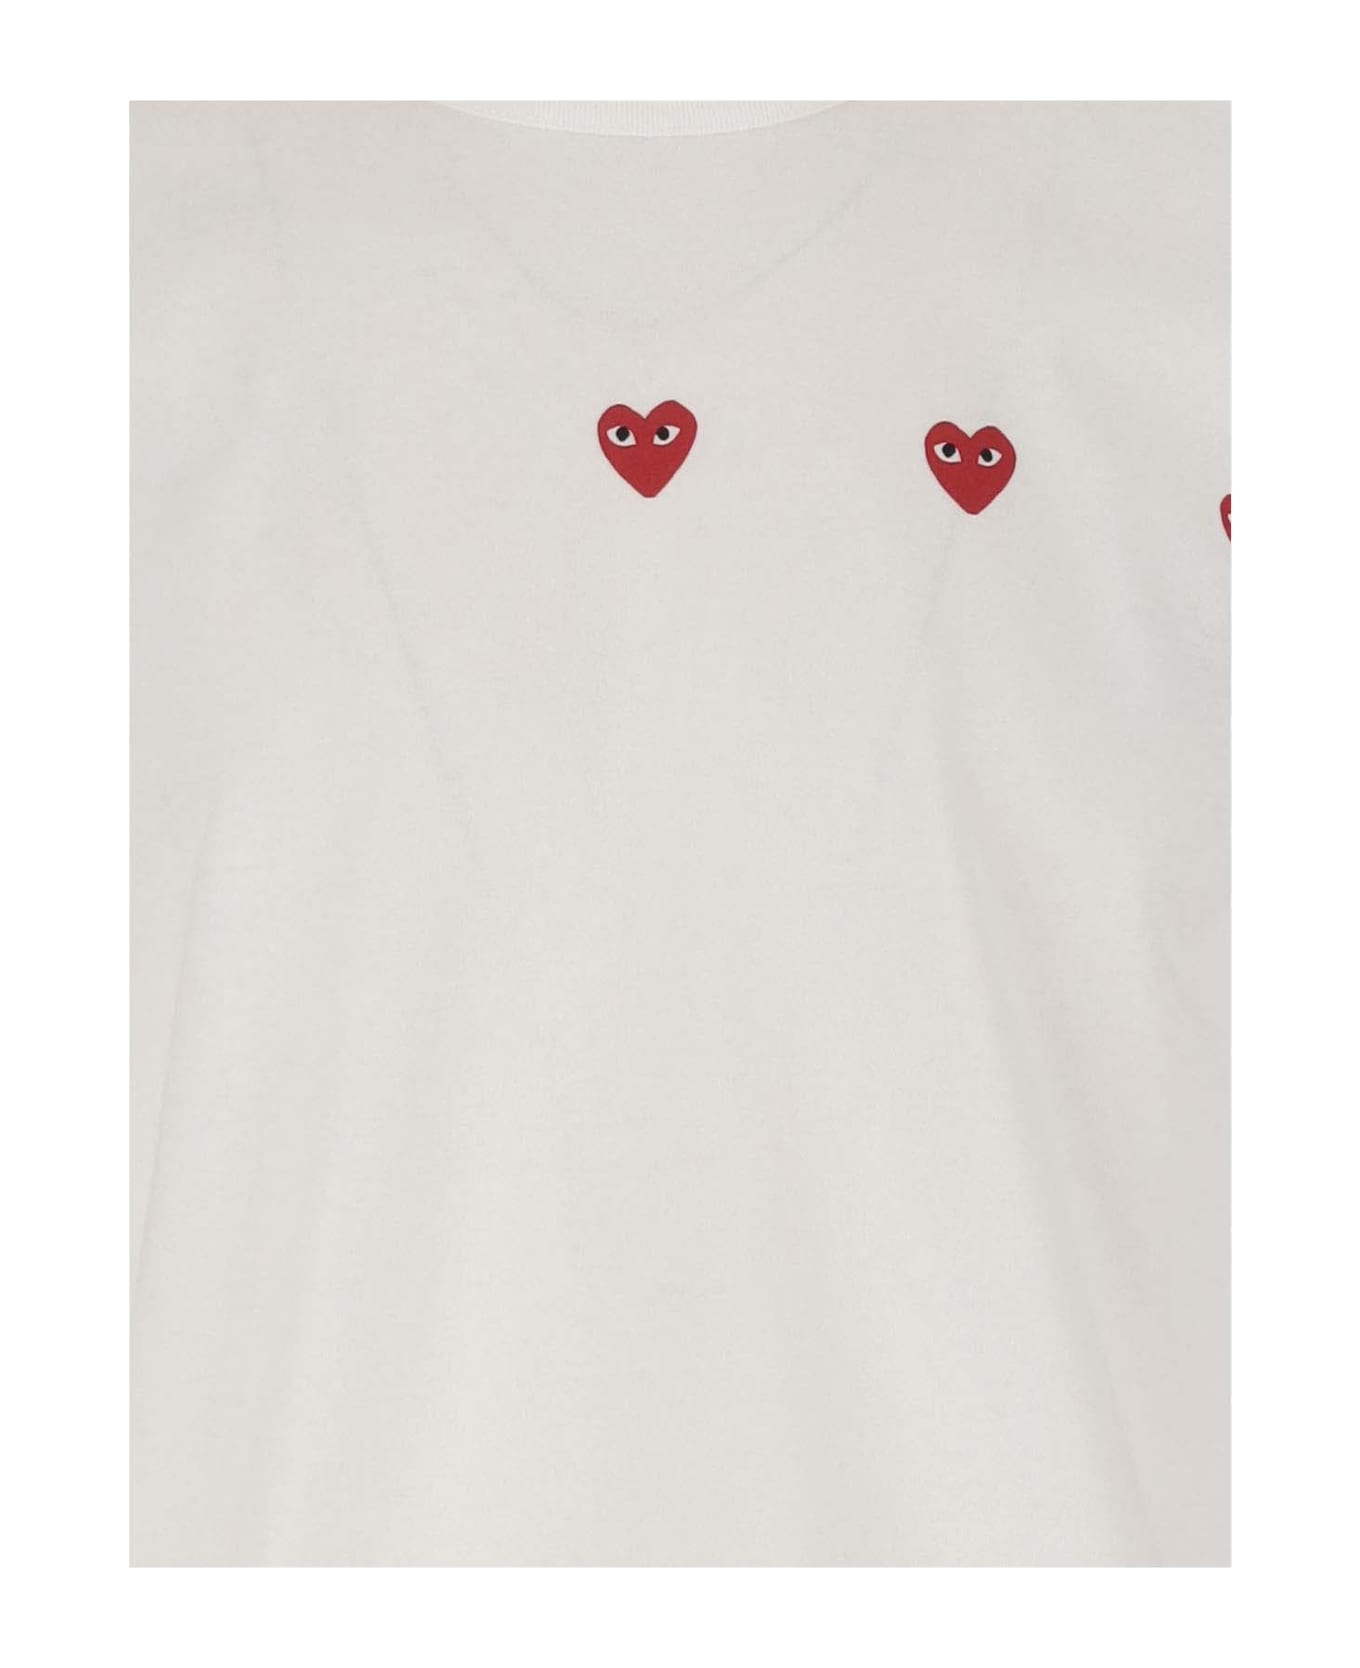 Comme des Garçons Cotton T-shirt With Logo - White